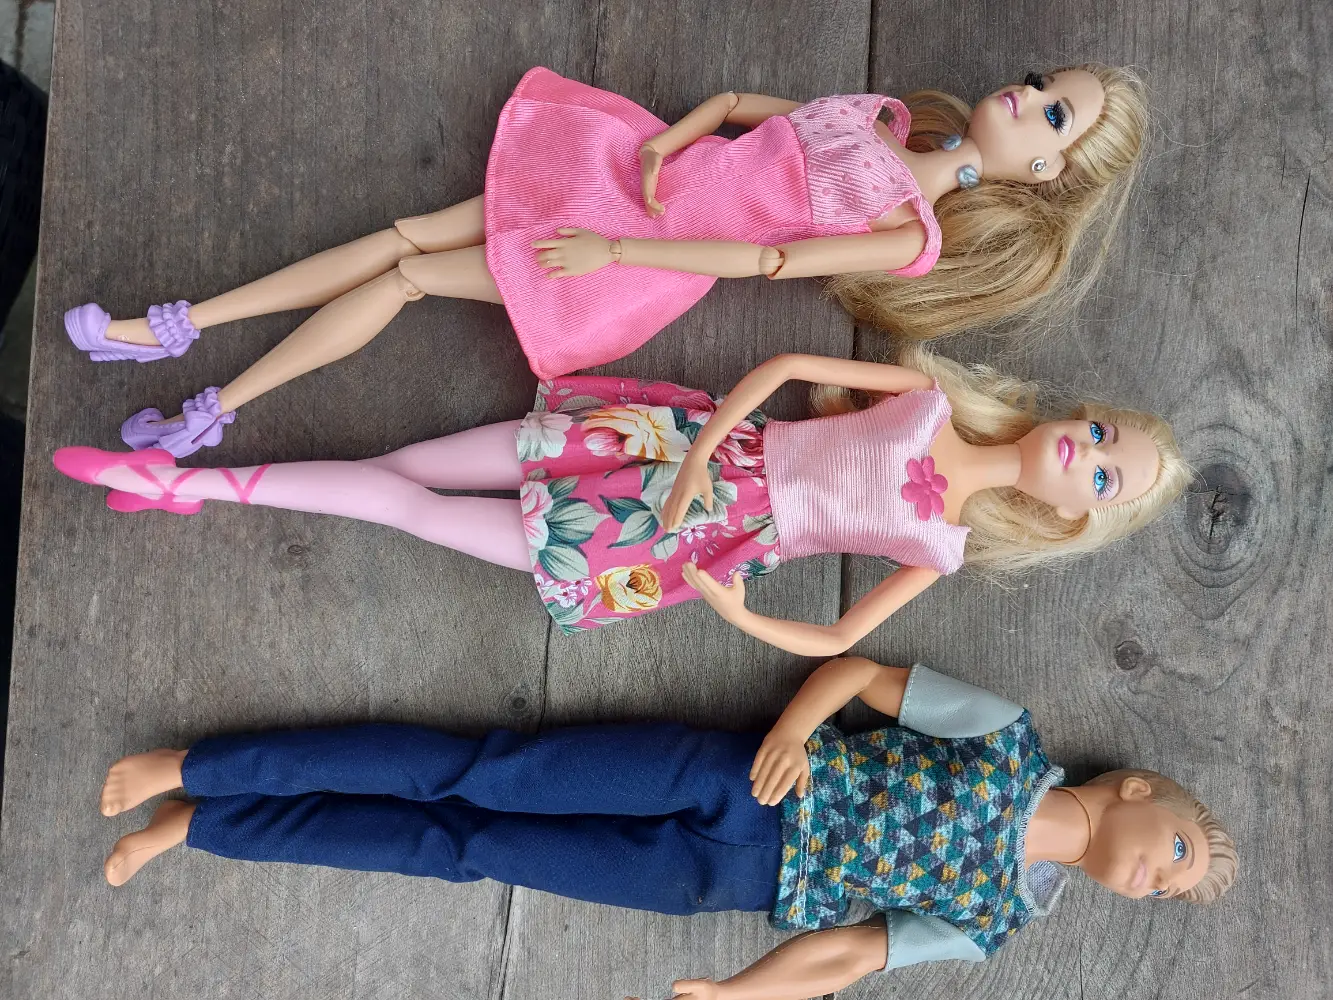 Barbie Pakke med bil møbler og dukke